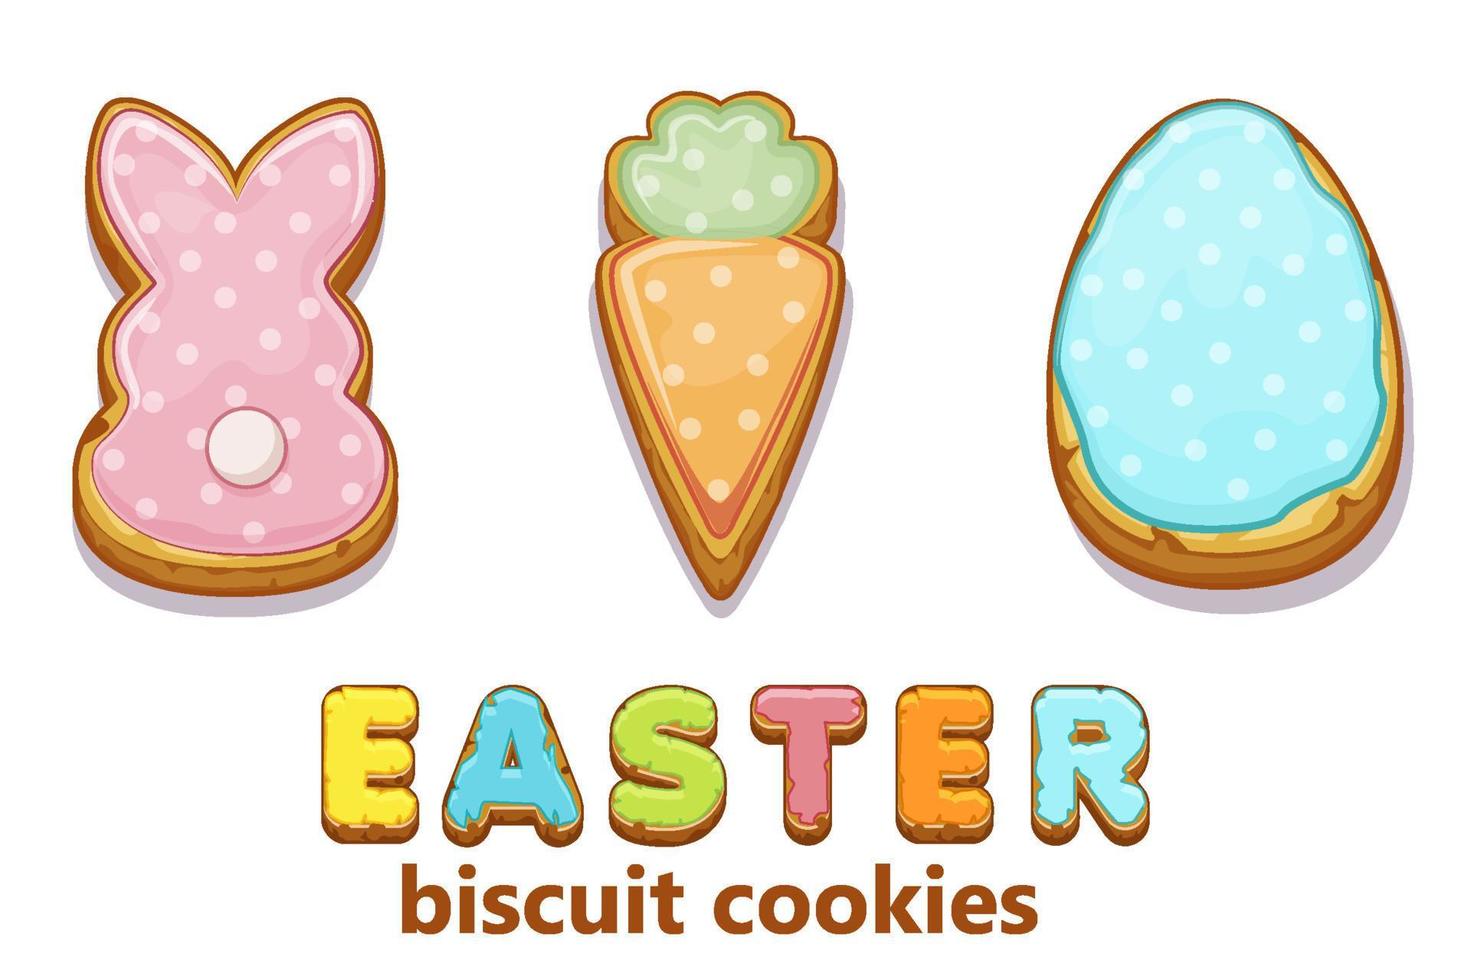 contento Pasqua con carino coniglietti e uovo biscotto biscotti. vettore illustrazione vacanza saluto con carota biscotti e iscrizione.